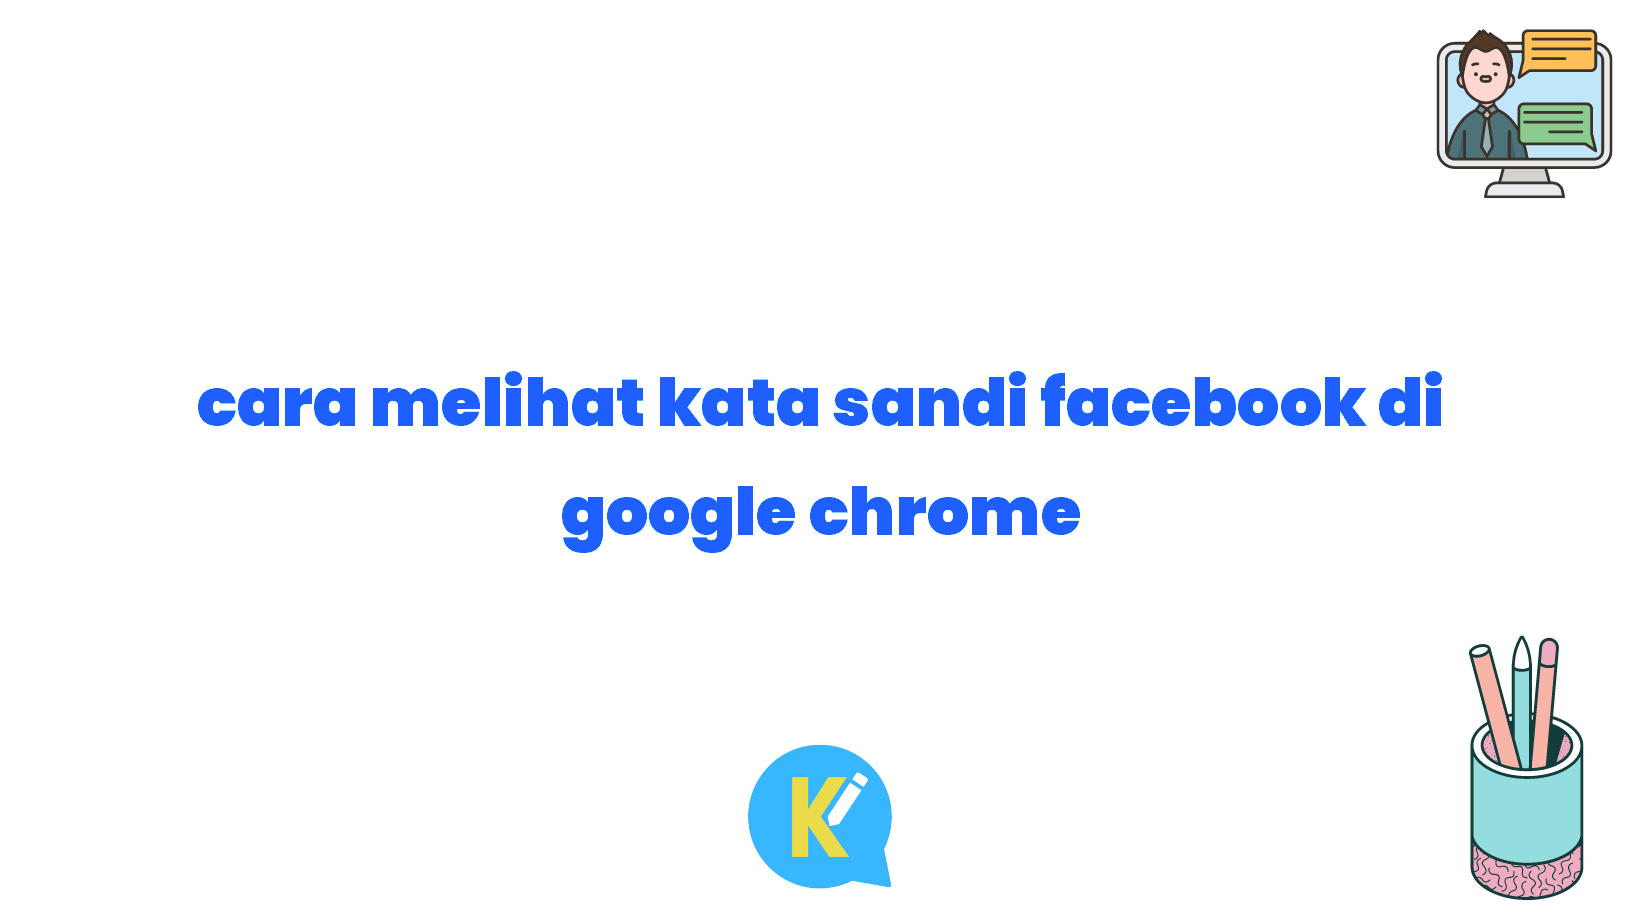 cara melihat kata sandi facebook di google chrome